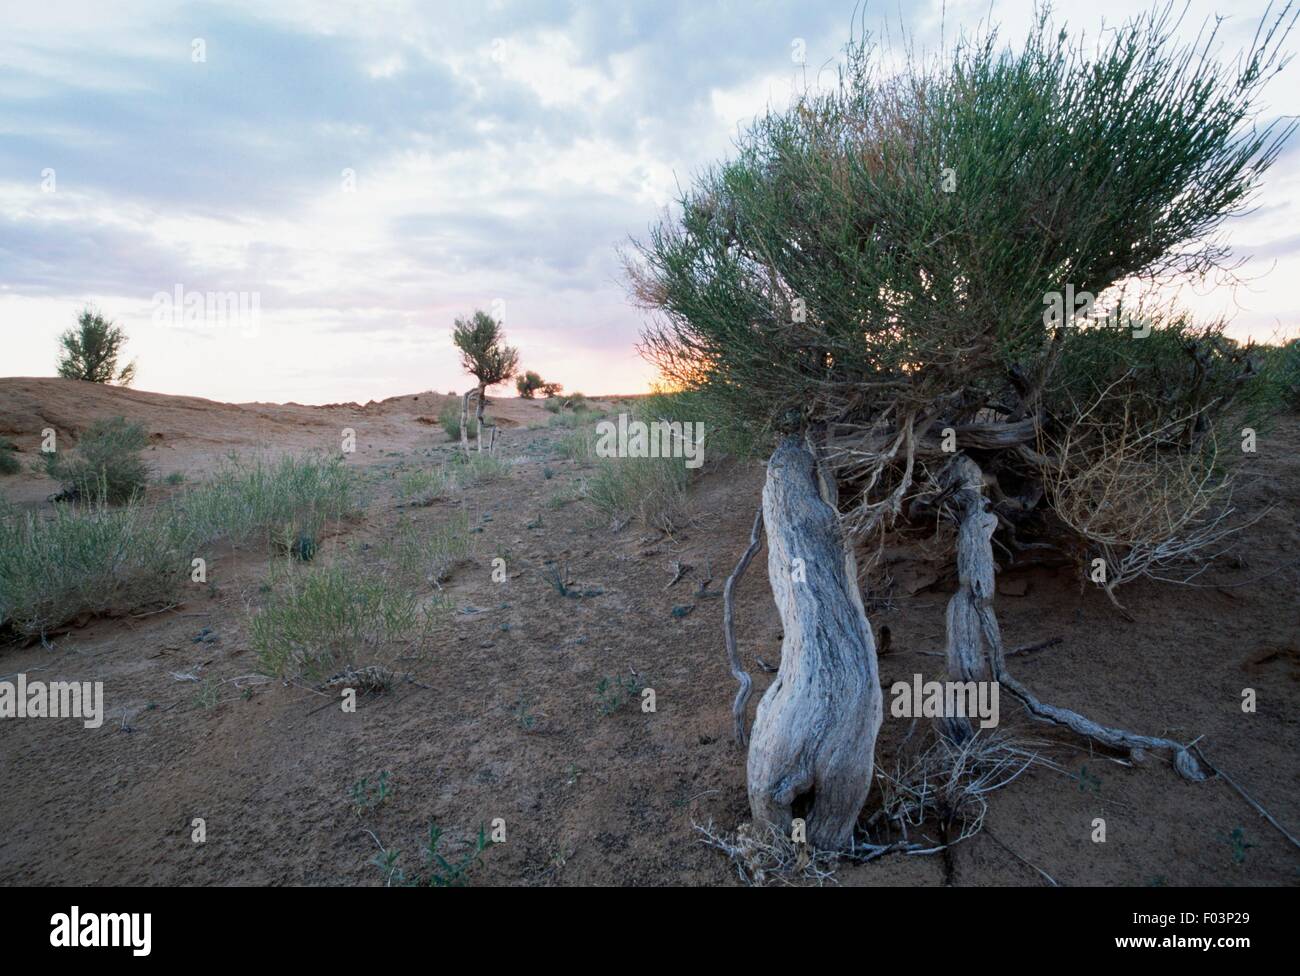 Saxaul (Haloxylon Ammodendron), Amaranthaceae, Wüste Gobi, Mongolei  Stockfotografie - Alamy